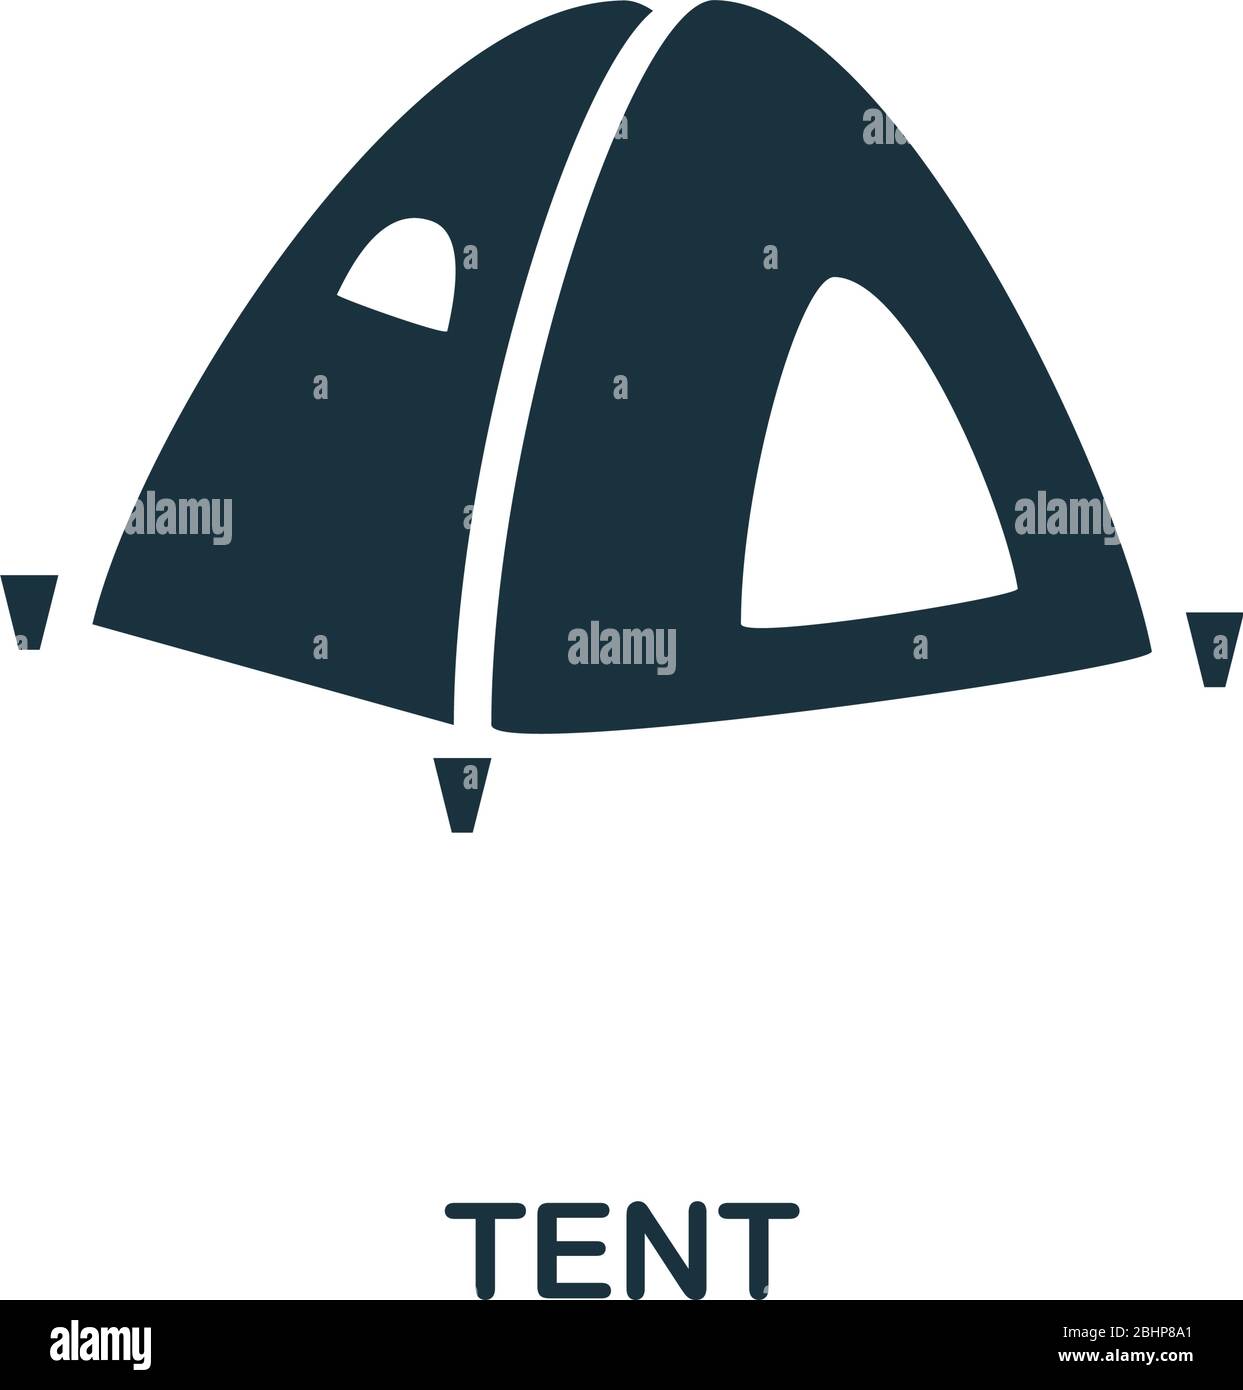 Zelt-Symbol. Einfache Illustration aus der Urlaubskollektion. Creative Tent Icon für Web-Design, Vorlagen, Infografiken und vieles mehr Stock Vektor